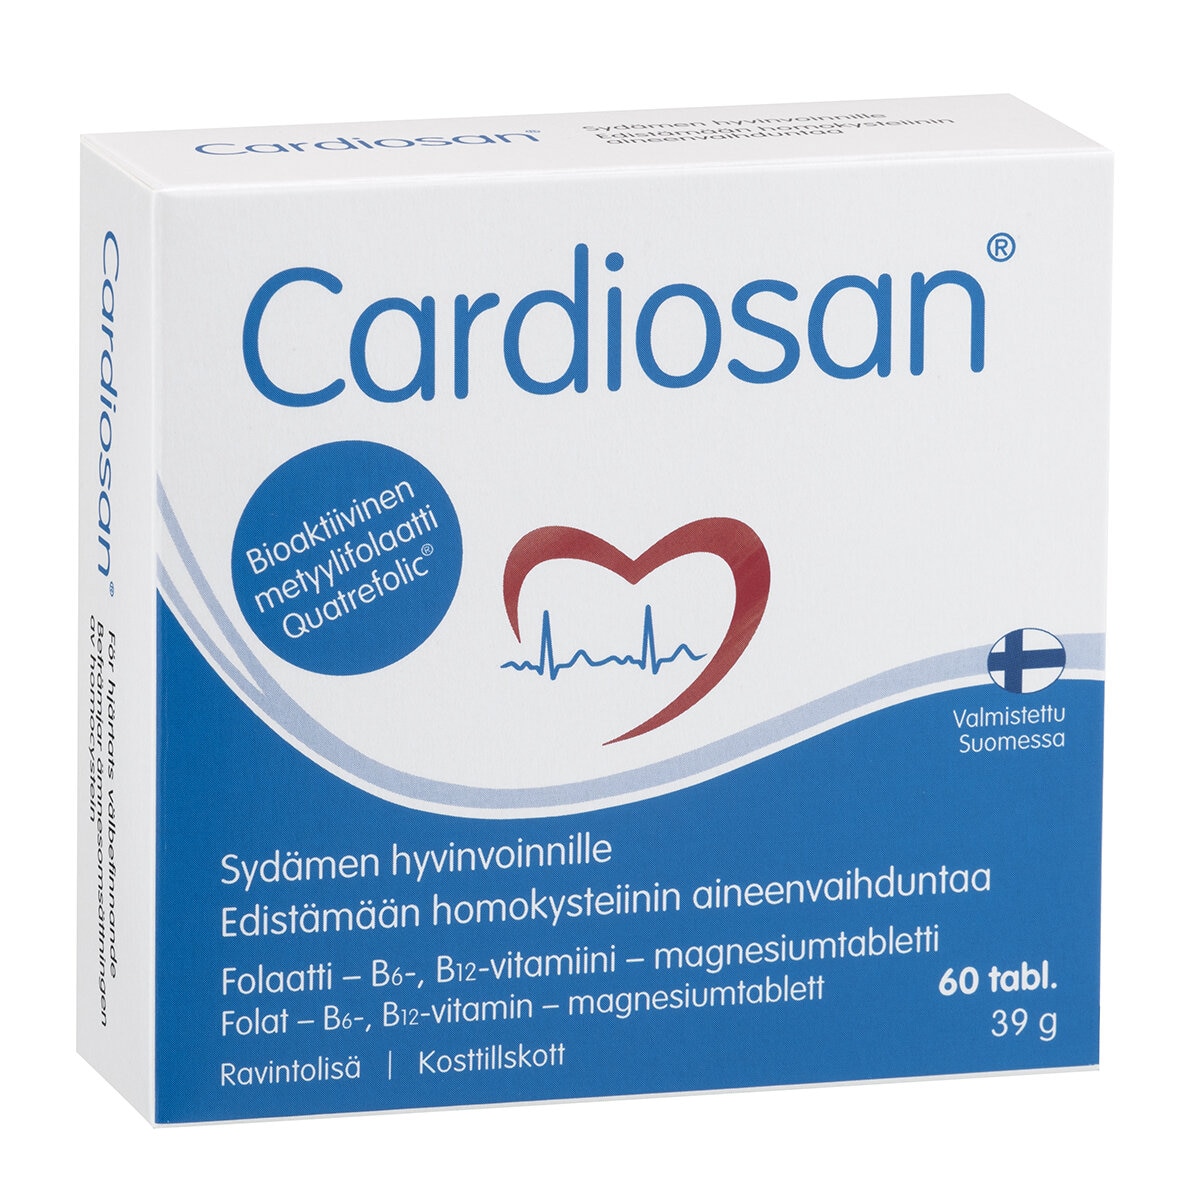 Cardiosan 60 tab